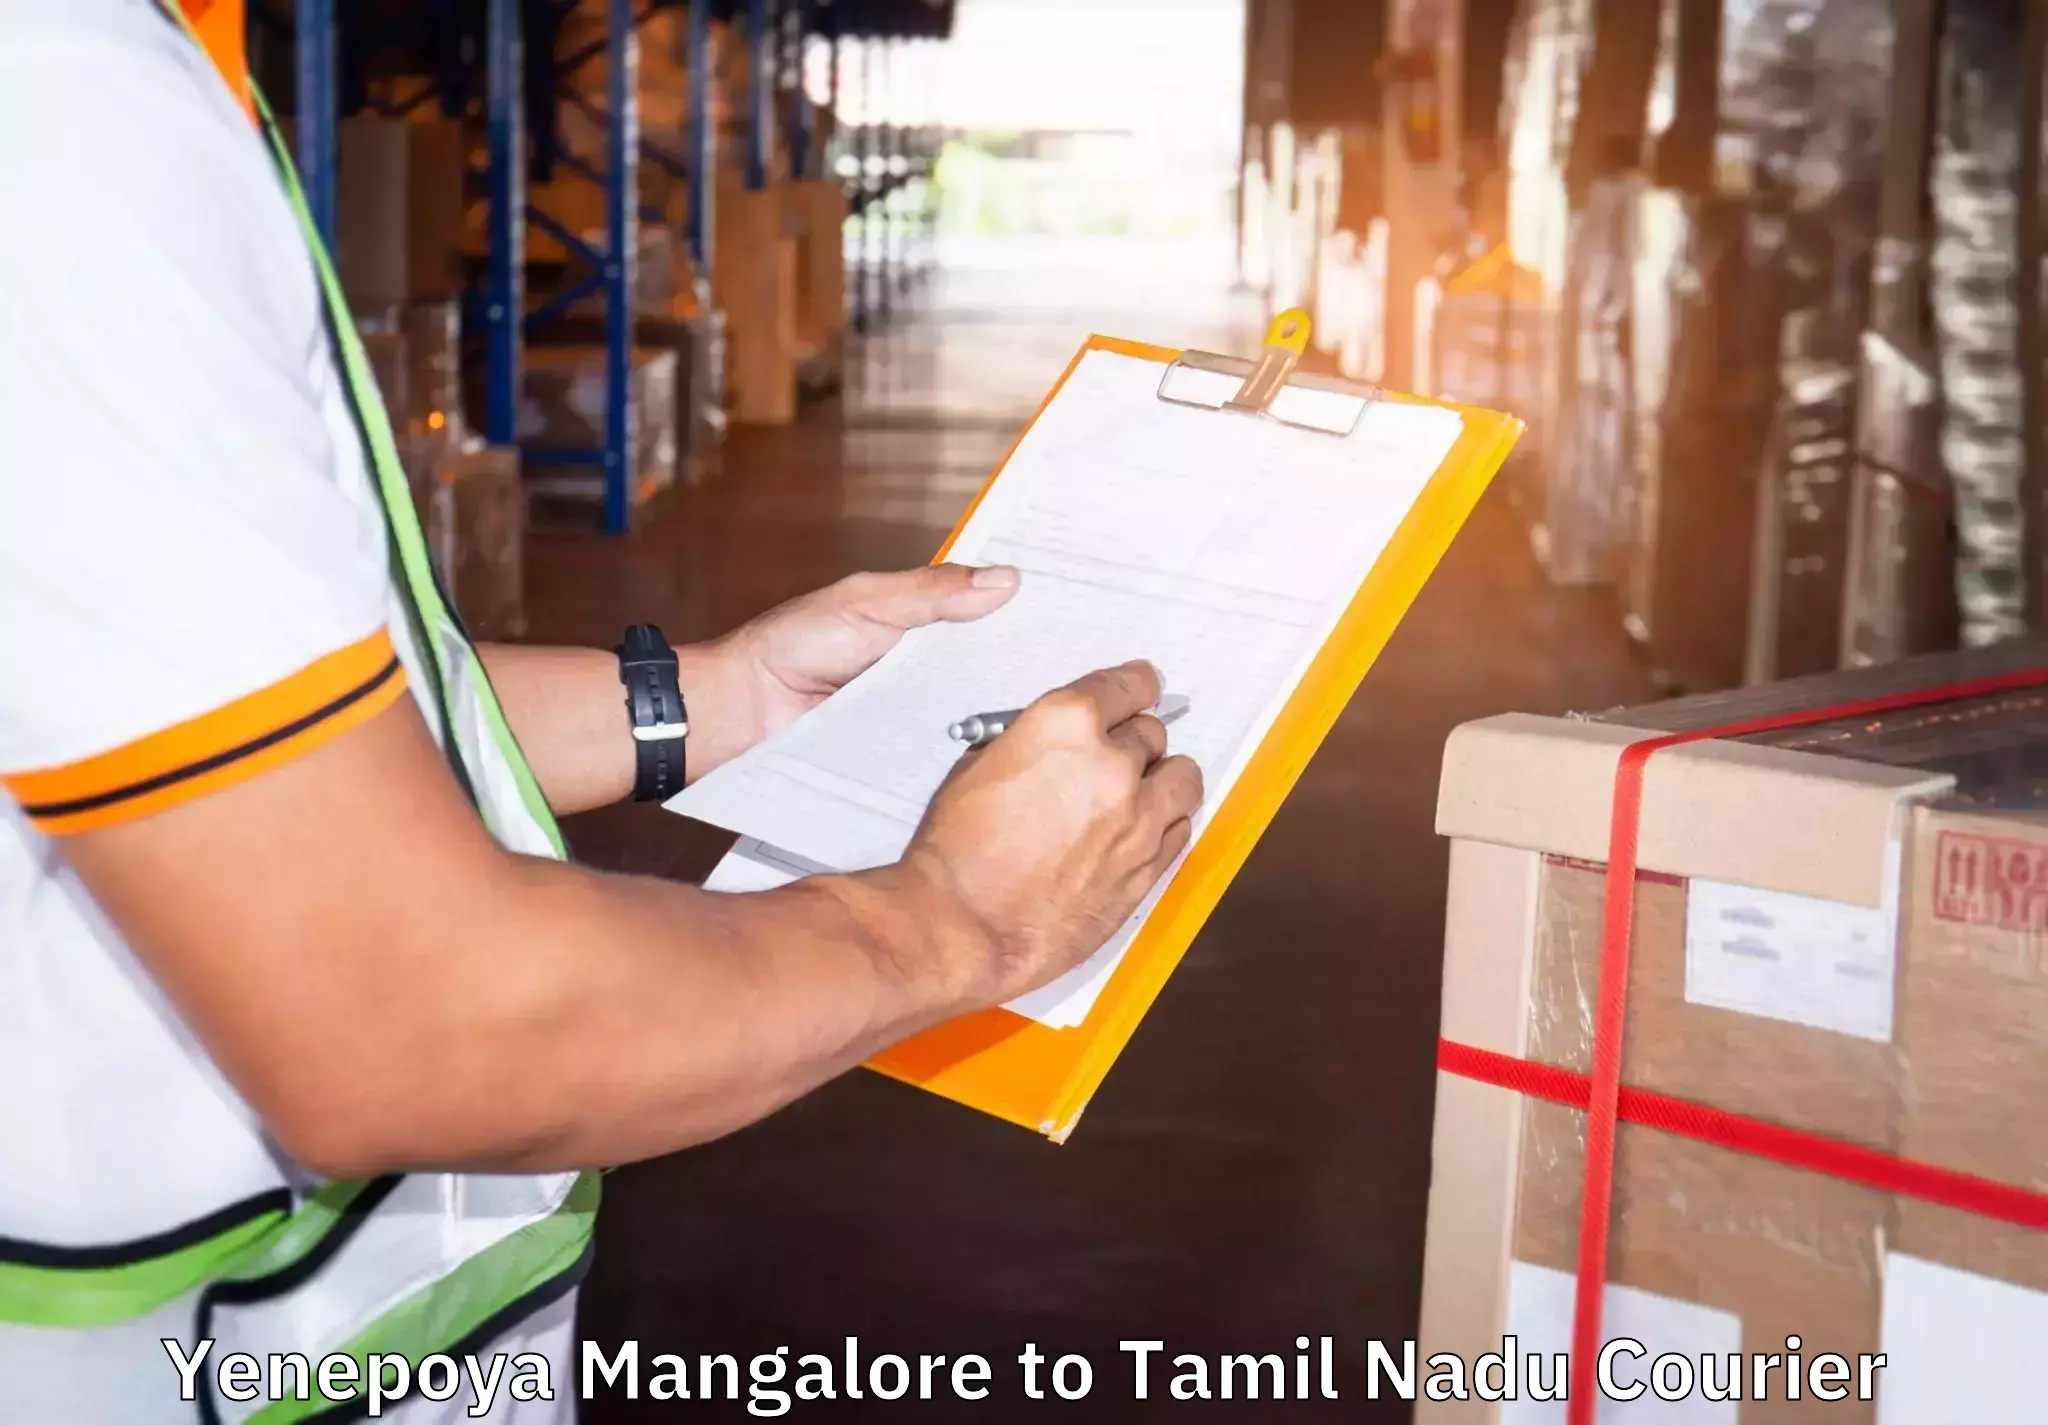 Moving and handling services Yenepoya Mangalore to Paramakudi